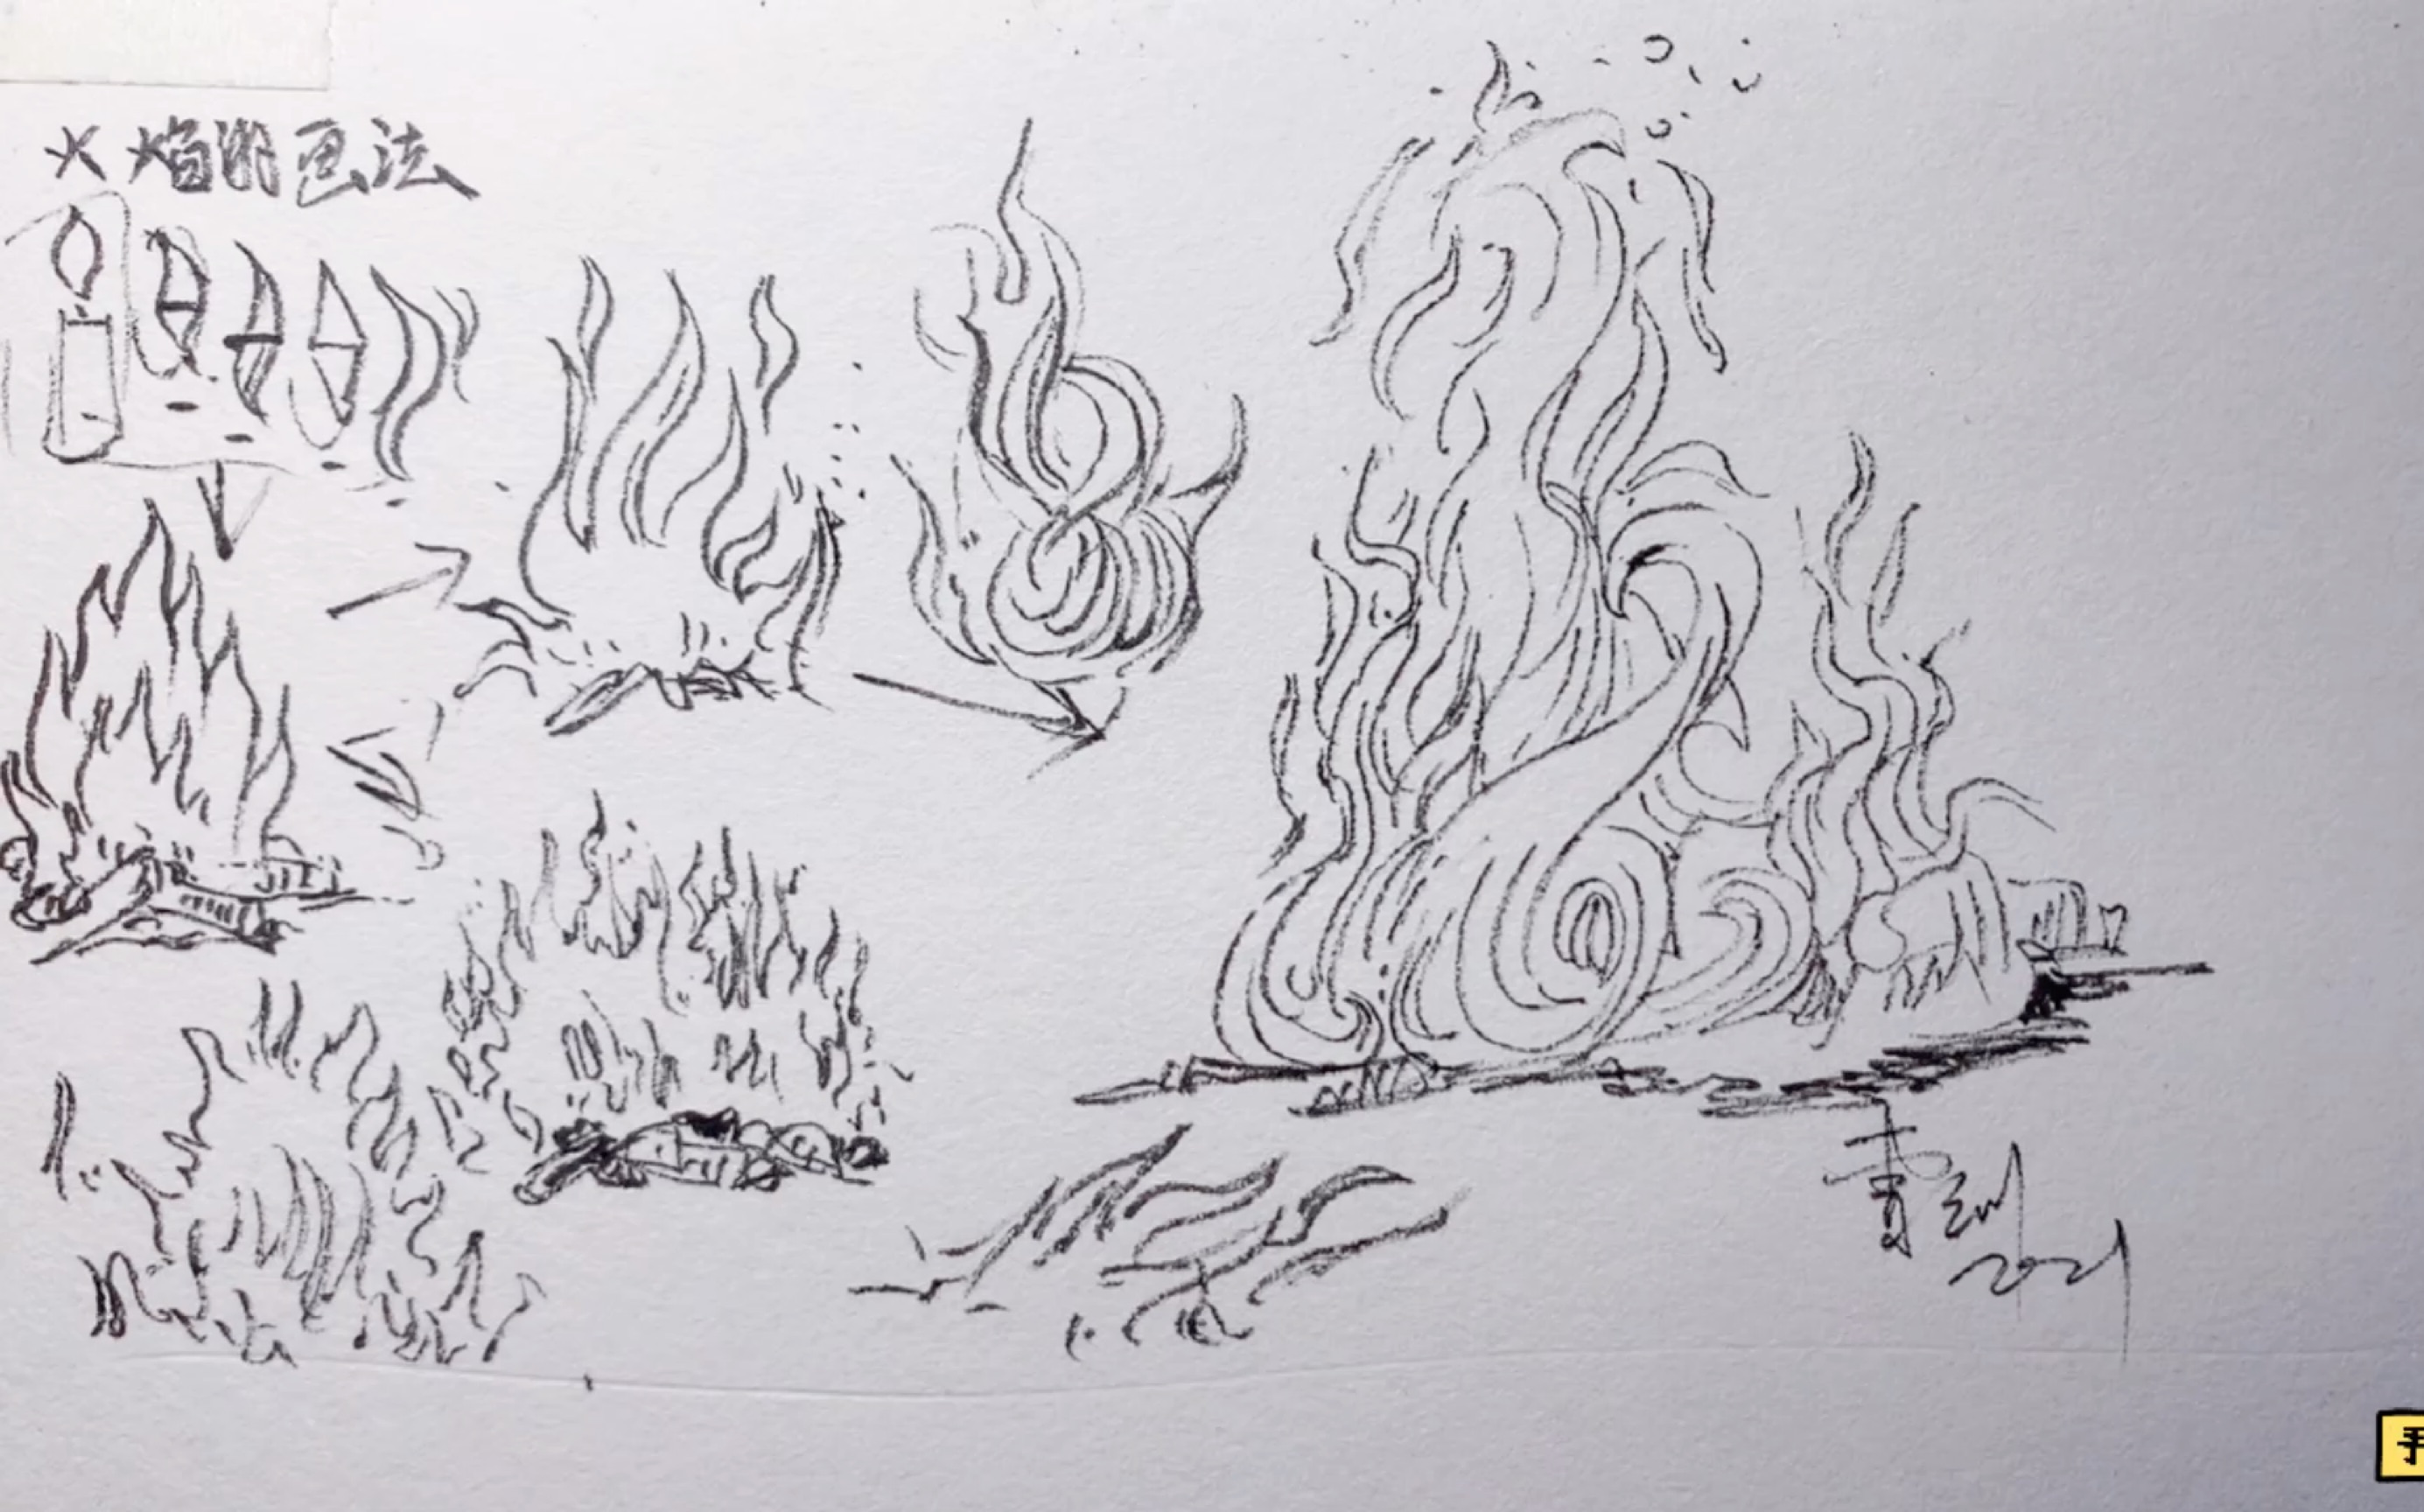 燃烧的火焰画法图片